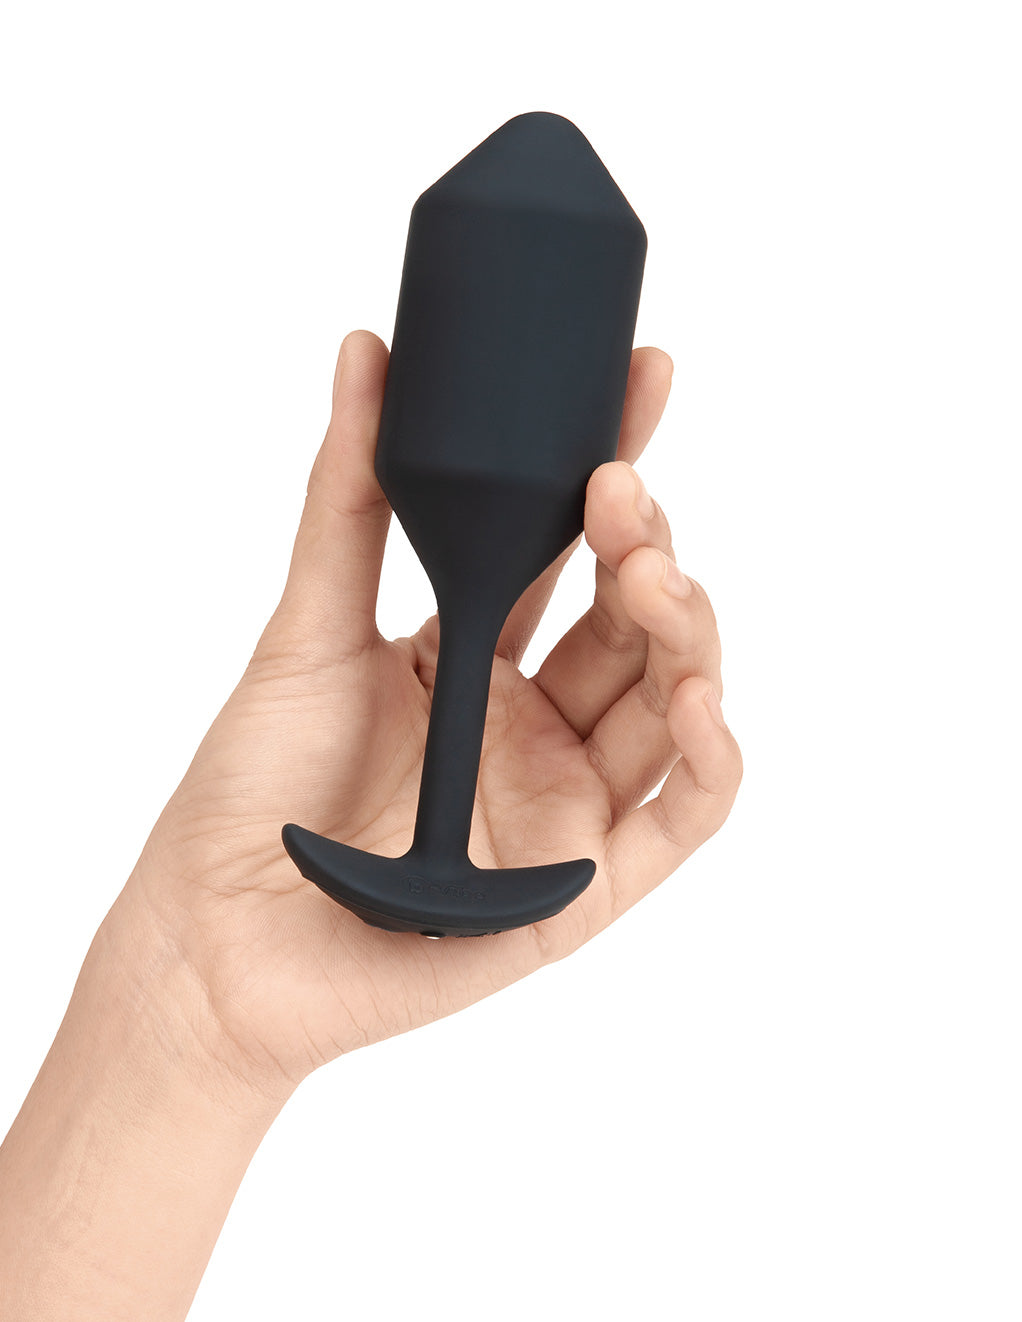 B-Vibe X-Large Vibrating Snug Plug- Black- In hand